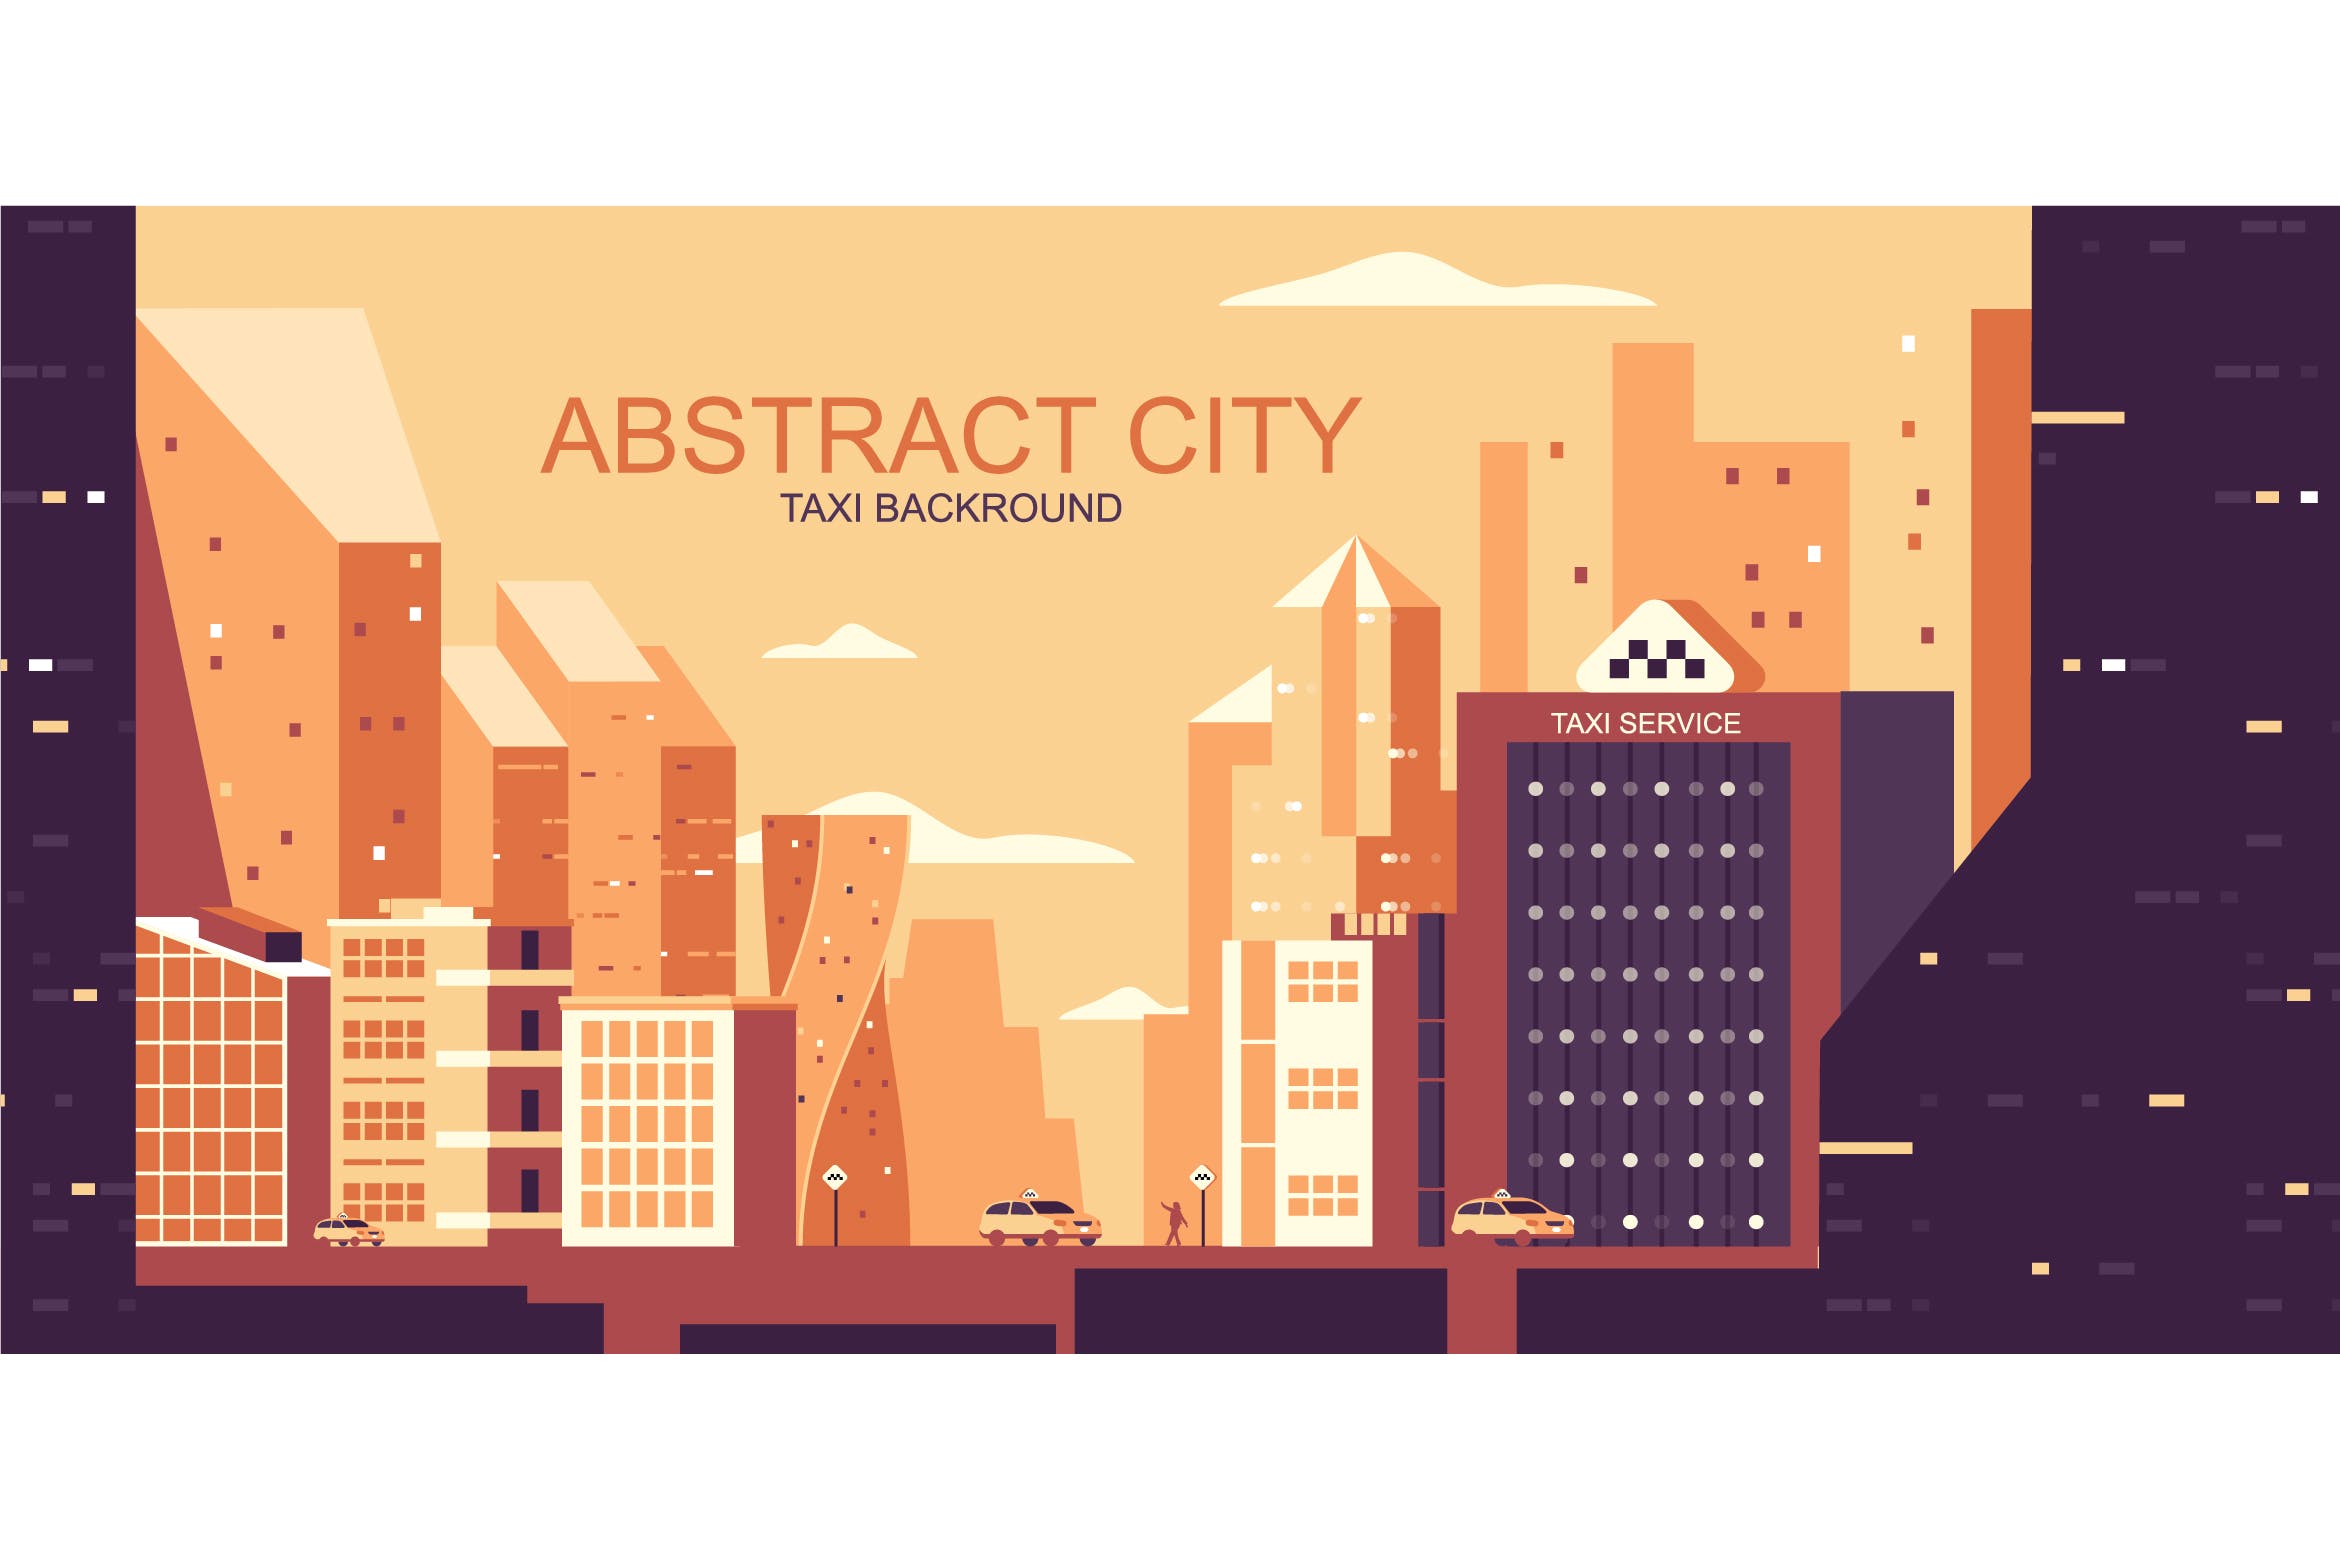 城市交通主题网站Header设计矢量插画蚂蚁素材精选 Taxi City Vector Illustration Header Website插图